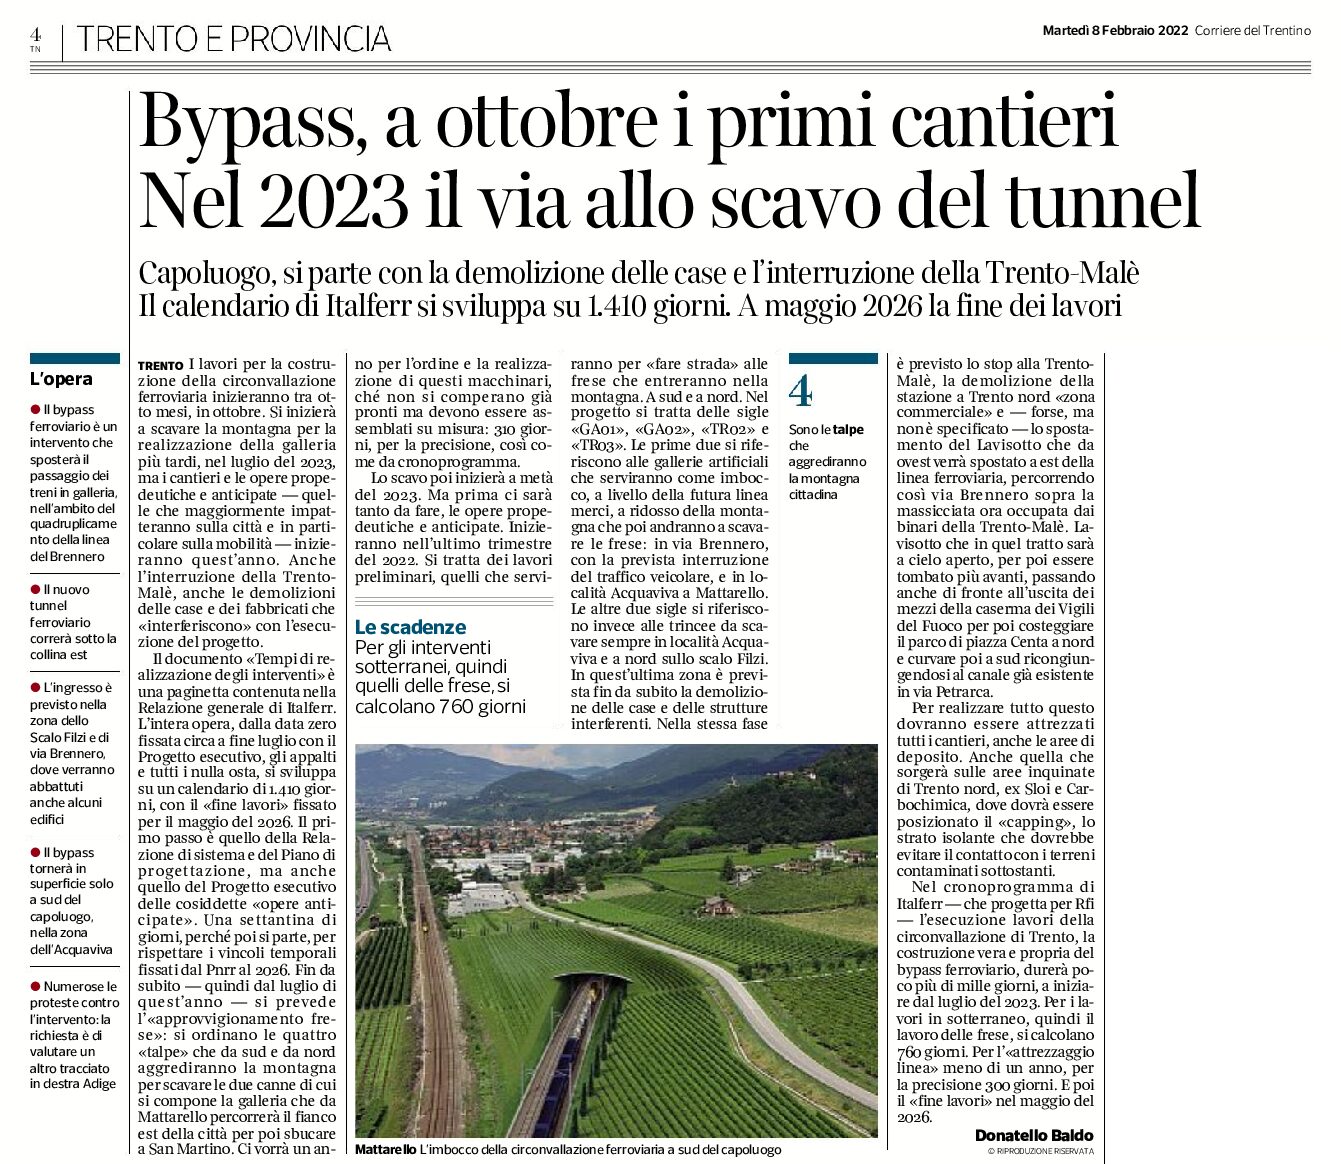 Trento, bypass: a ottobre i primi cantieri. Nel 2023 il via allo scavo del tunnel